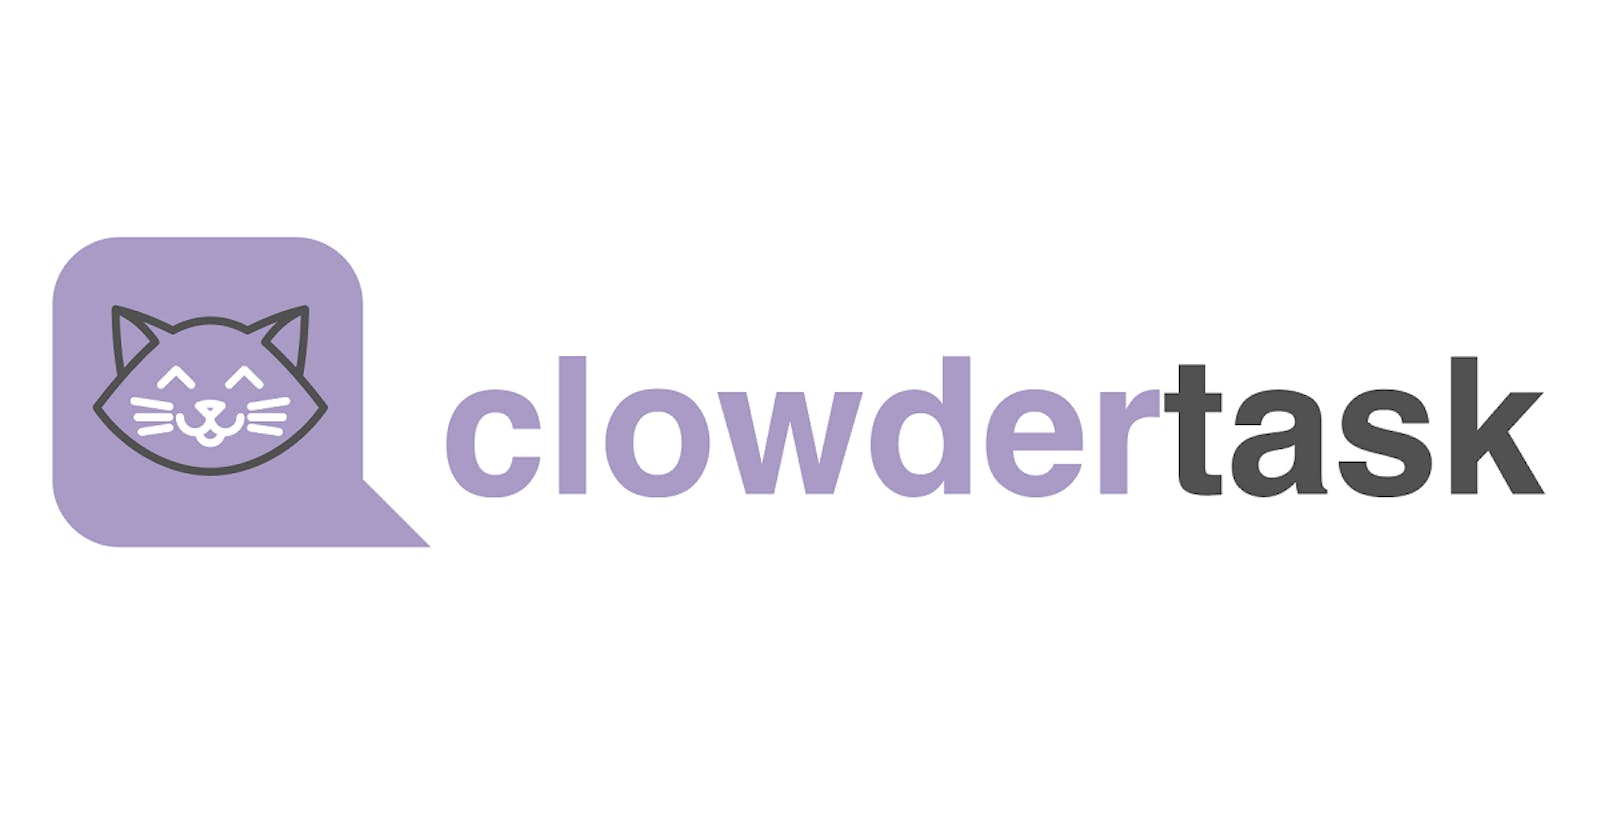 The basic UI for ClowderTask